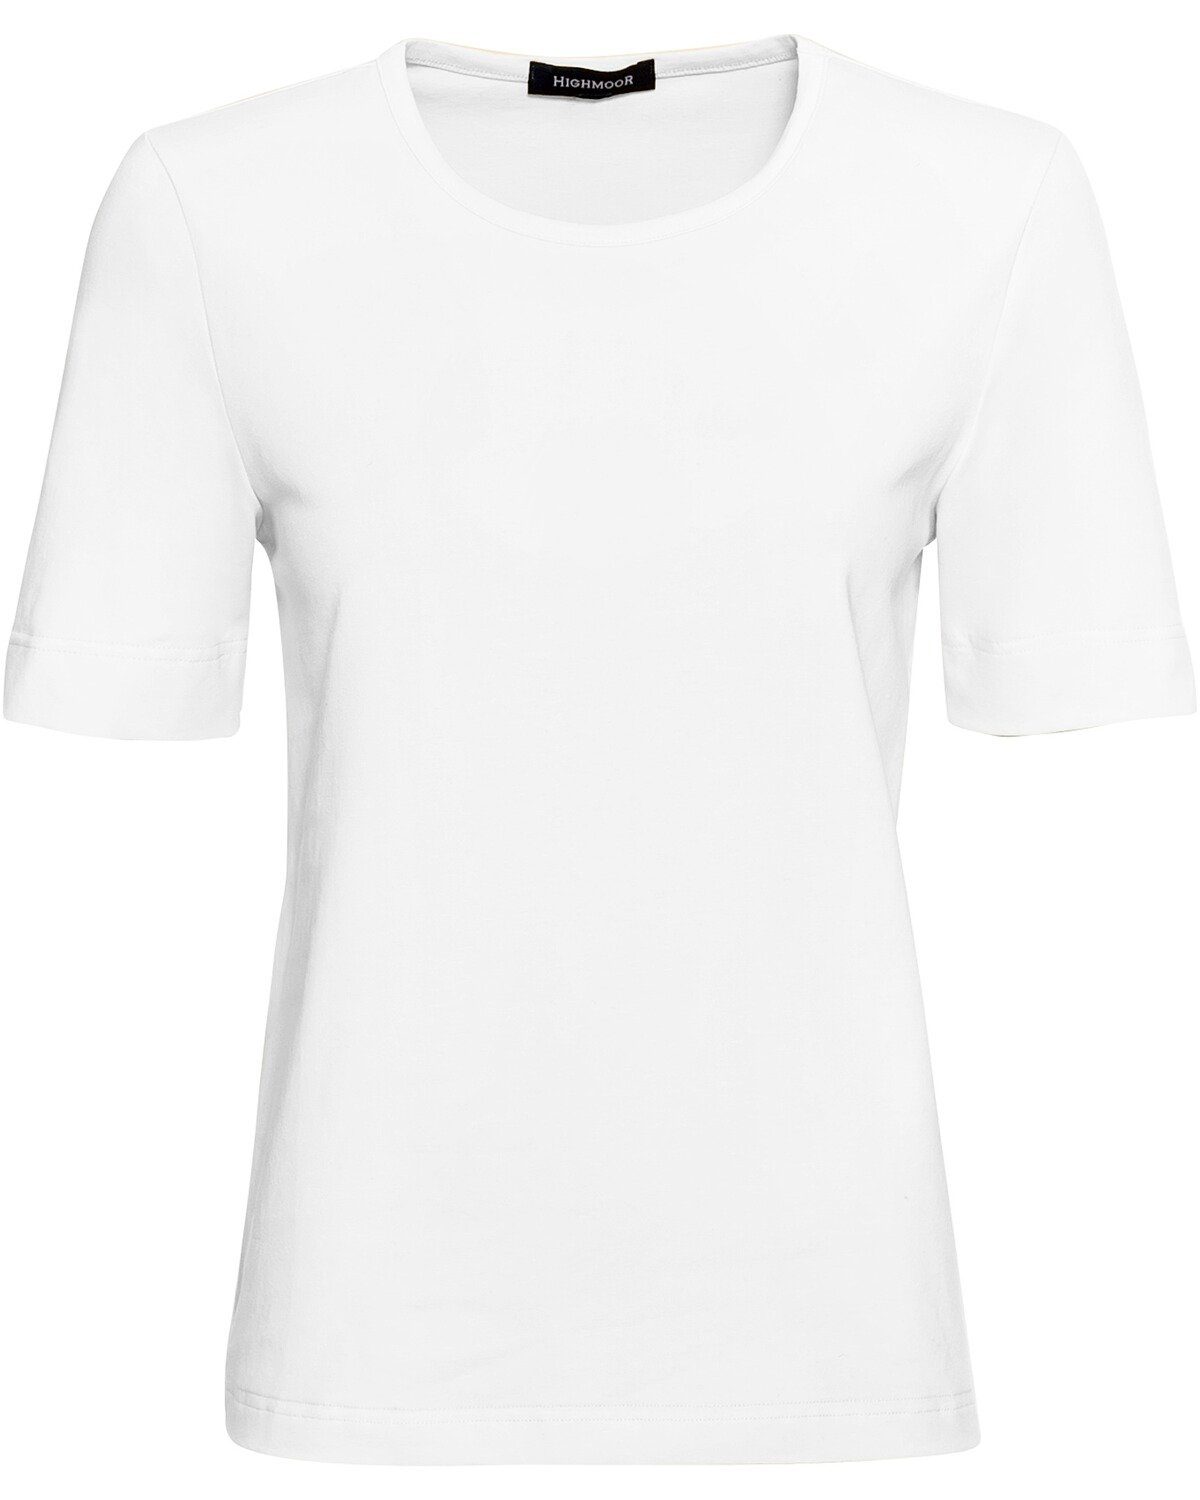 Highmoor T-Shirt T-Shirt mit Rundhals Weiß